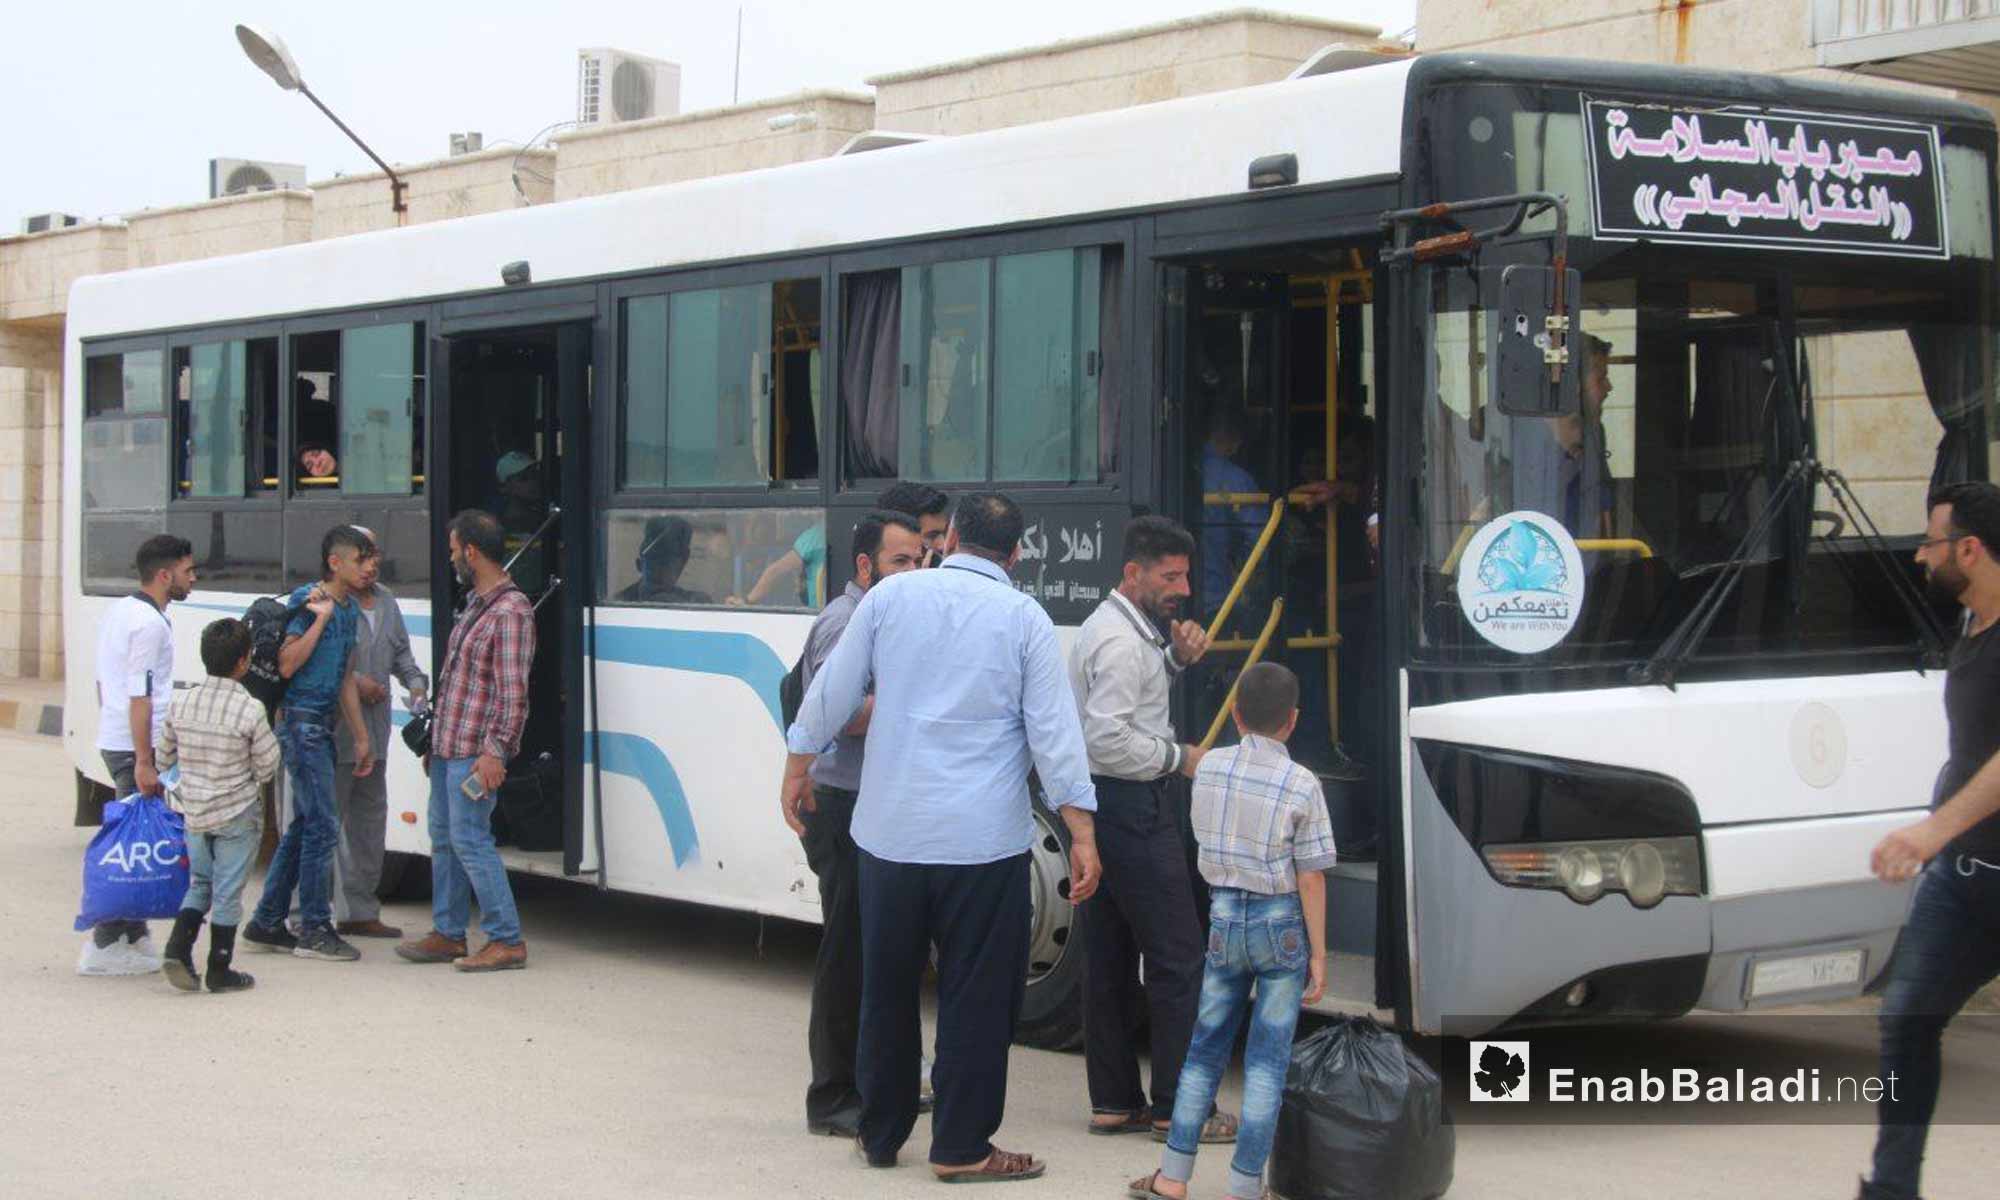 سوريون مقيمون في تركيا أثناء زيارتهم شمال حلب عبر معبر باب السلامة - 20 من أيار 2018 - (عنب بلدي)
